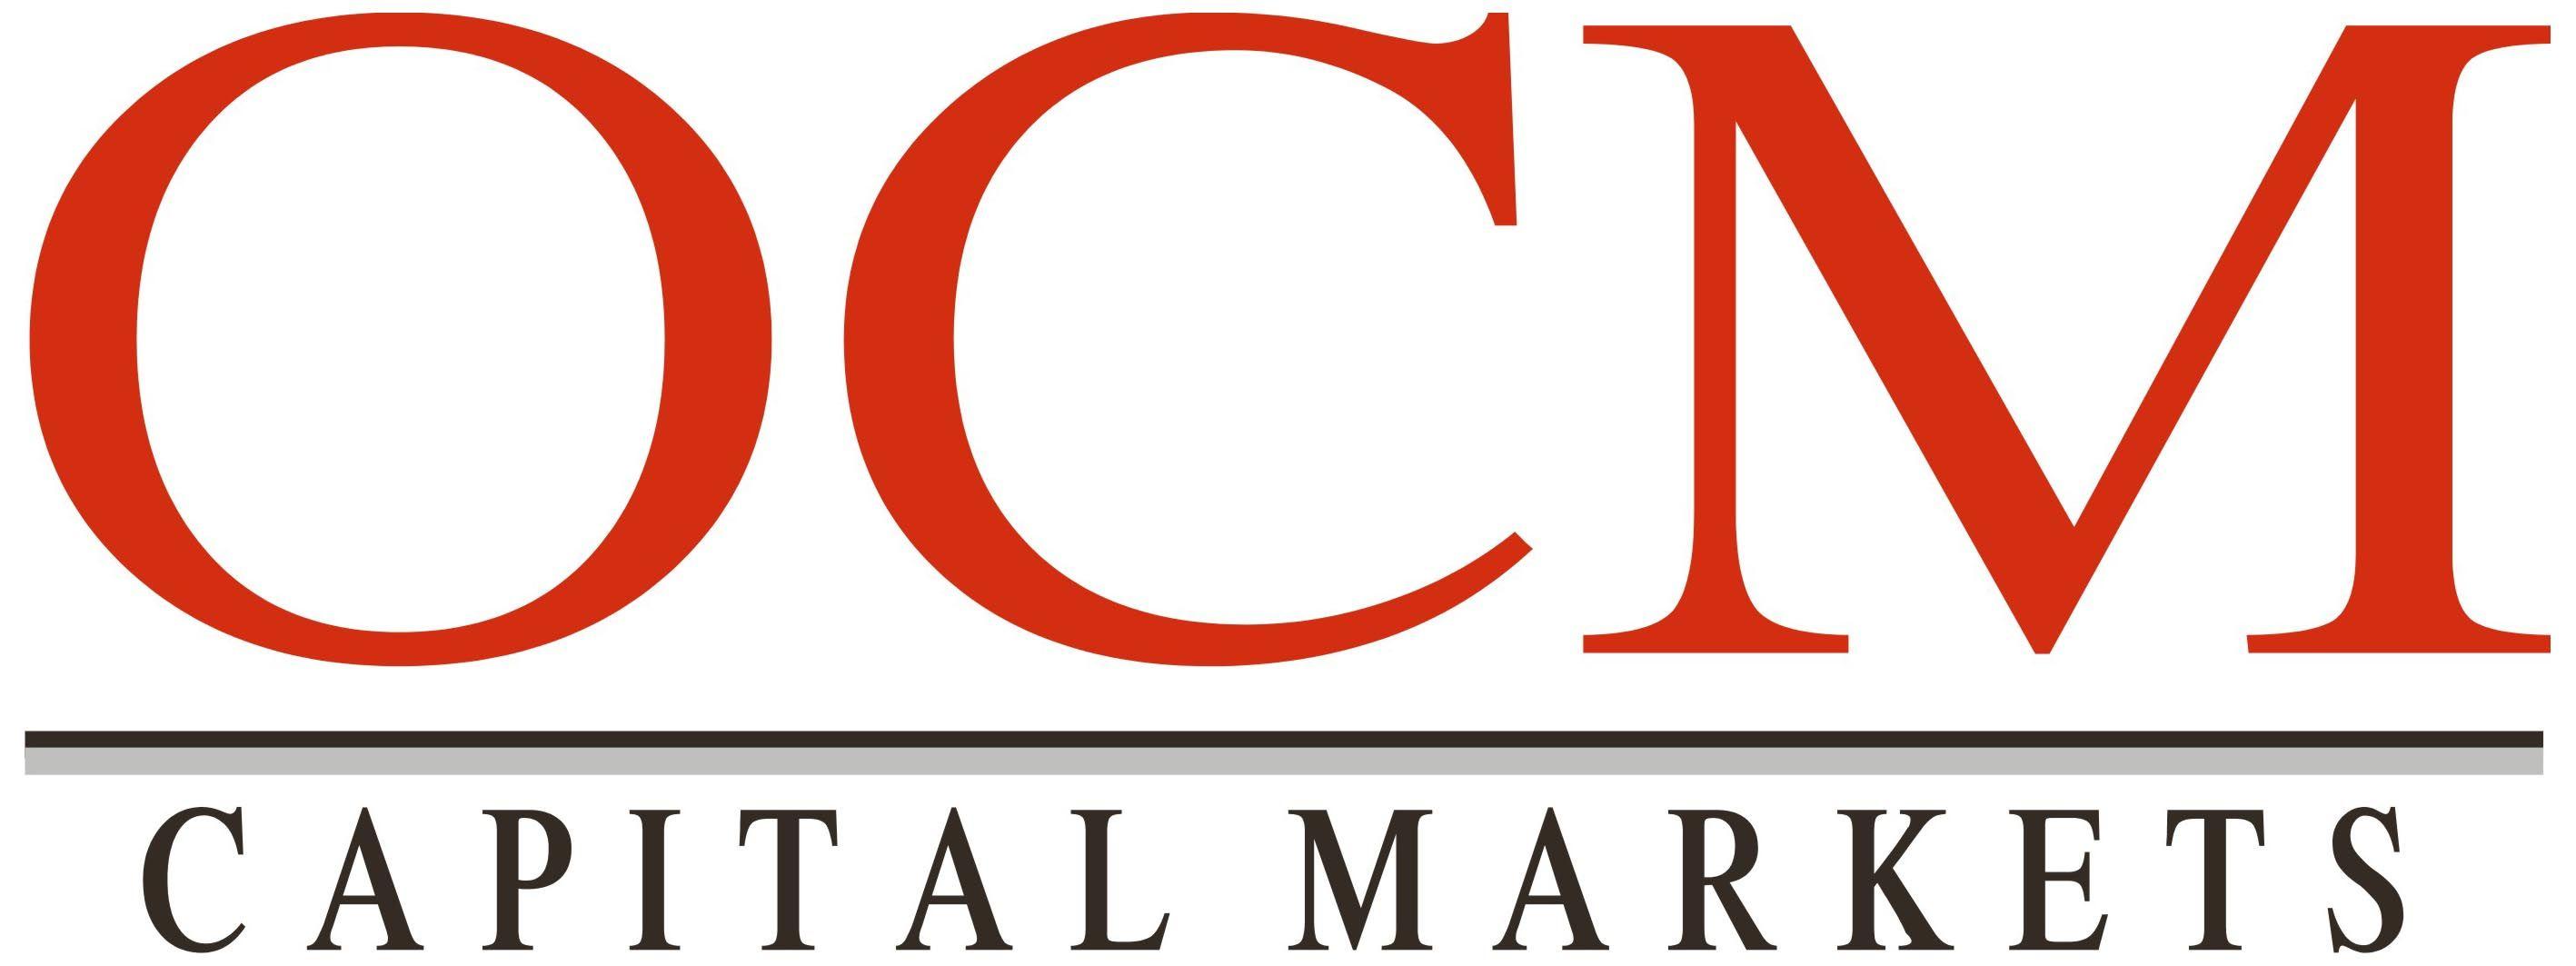 OCM Logo - File:OCM Logo.jpg - Wikimedia Commons